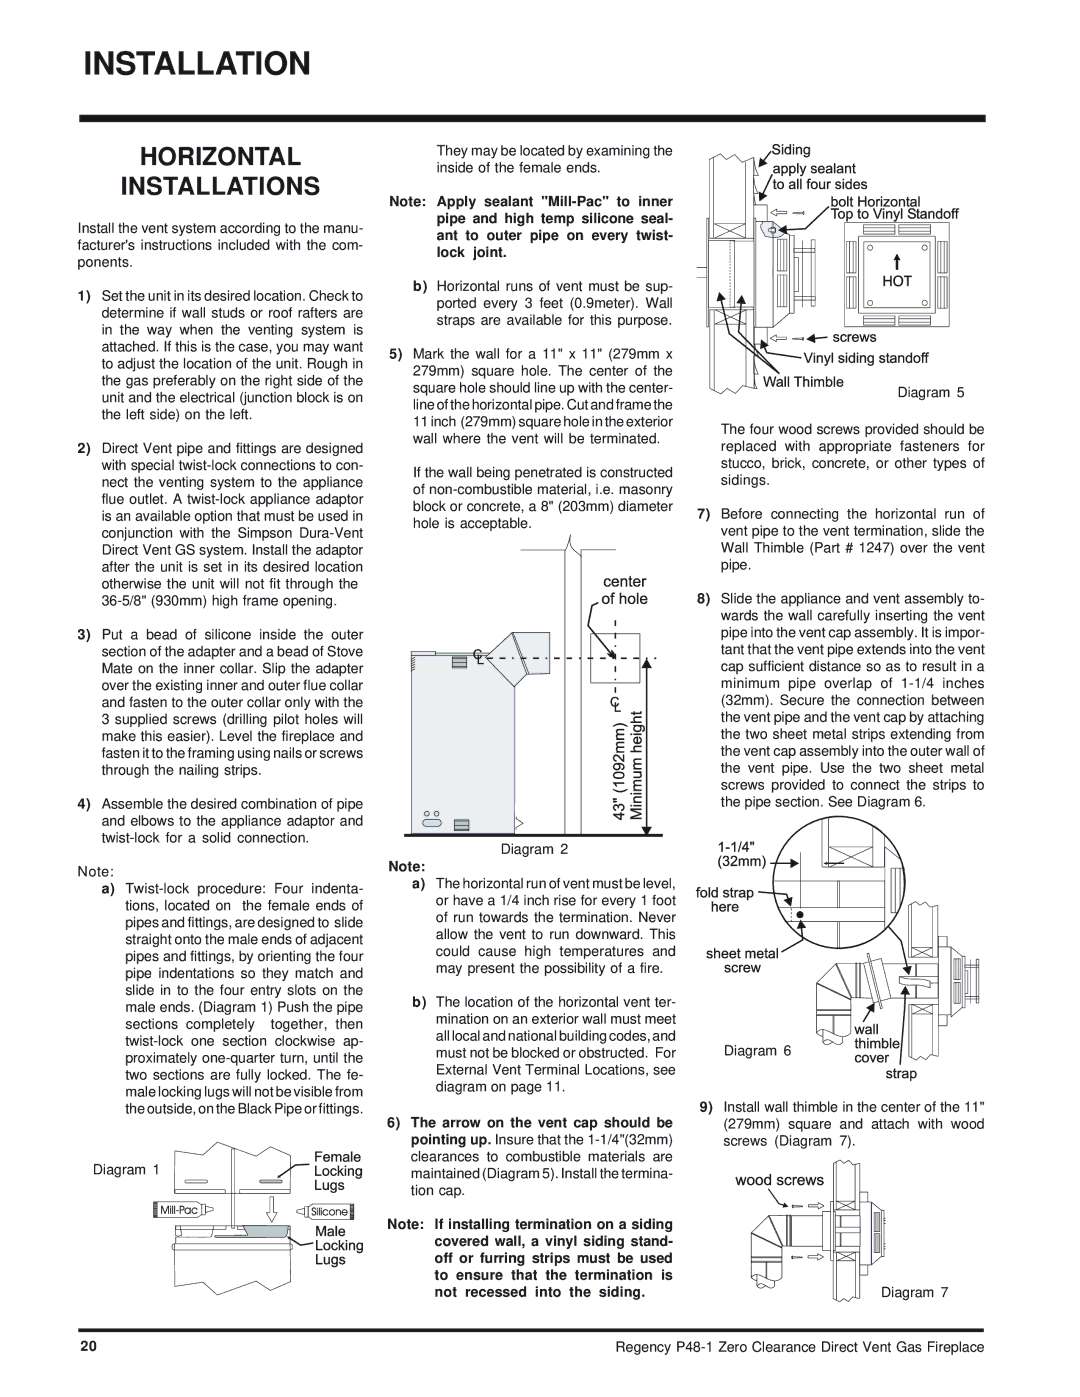 Regency P48-1 installation manual Horizontal Installations 